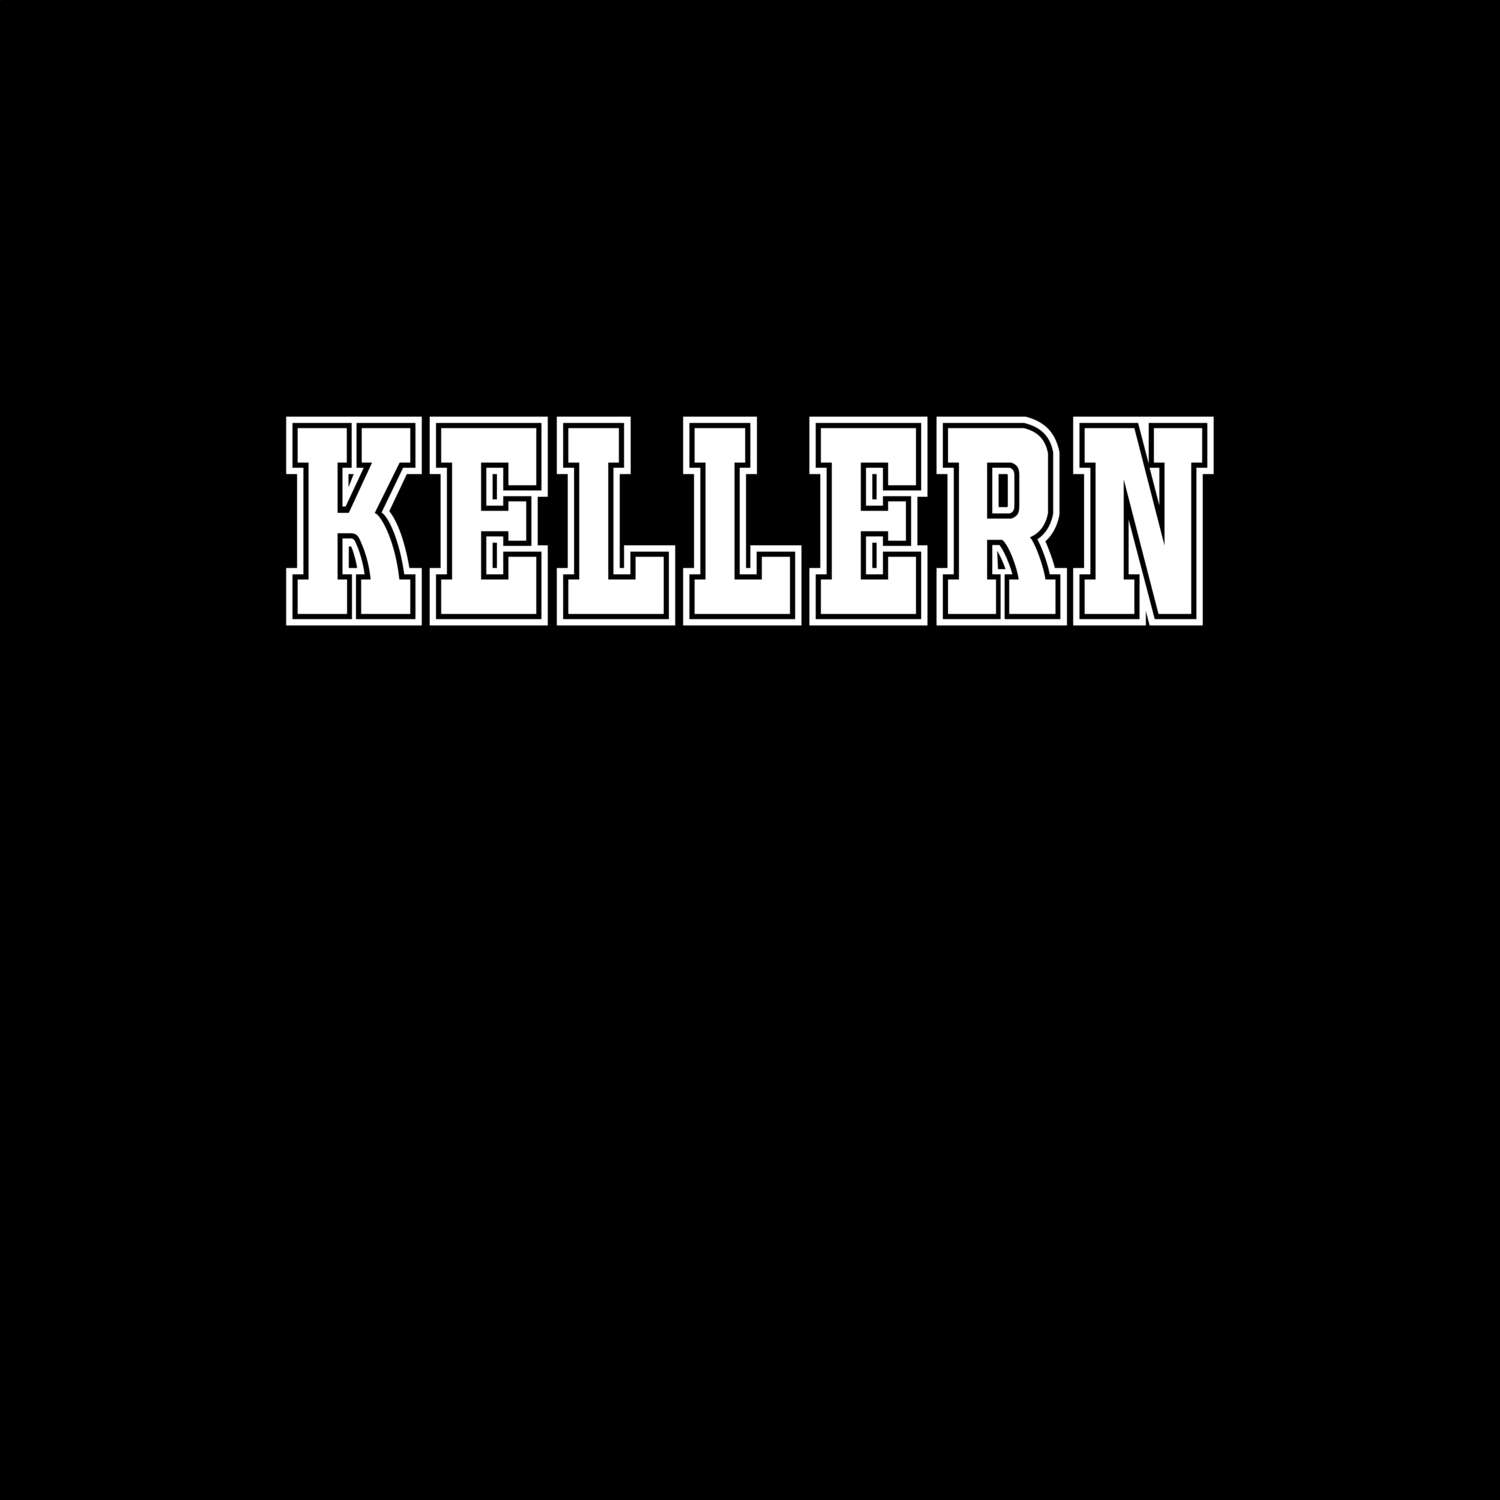 Kellern T-Shirt »Classic«